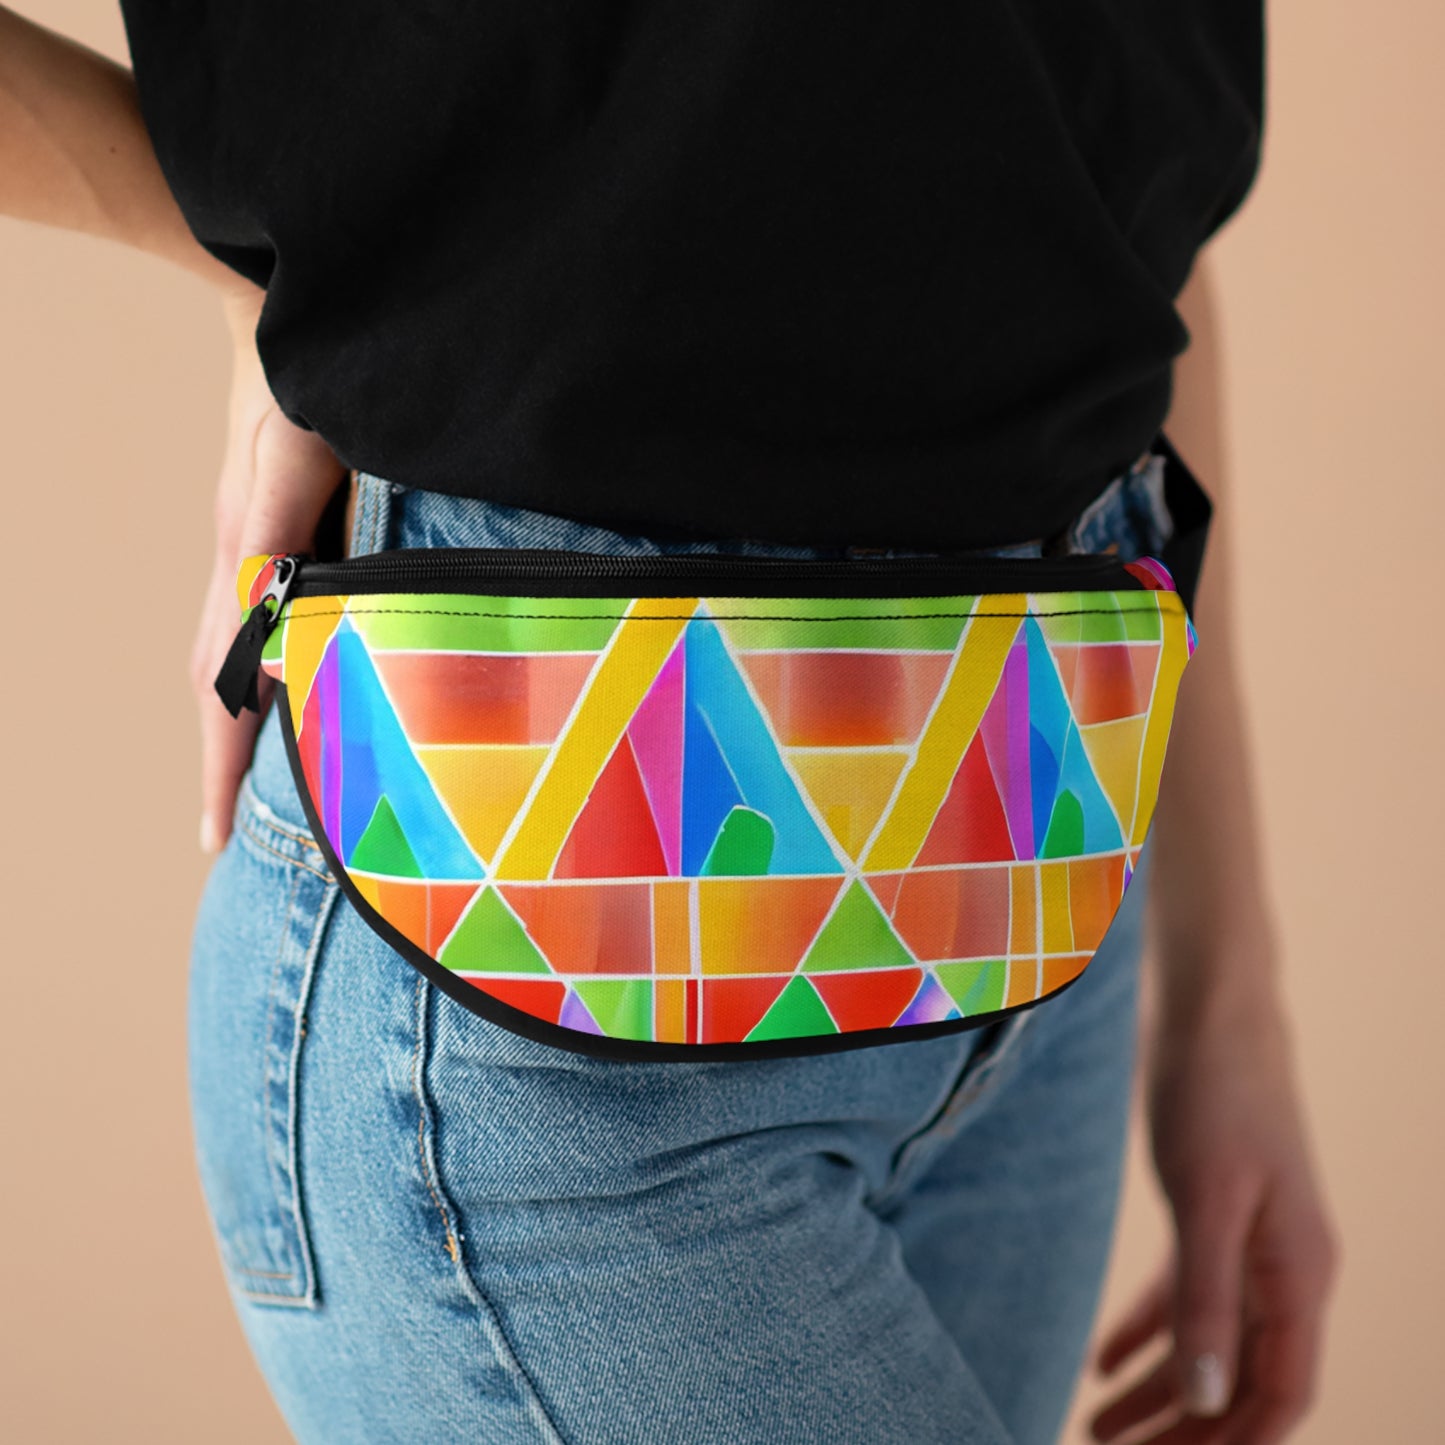 GlitterKween - Gay Pride Fanny Pack Belt Bag